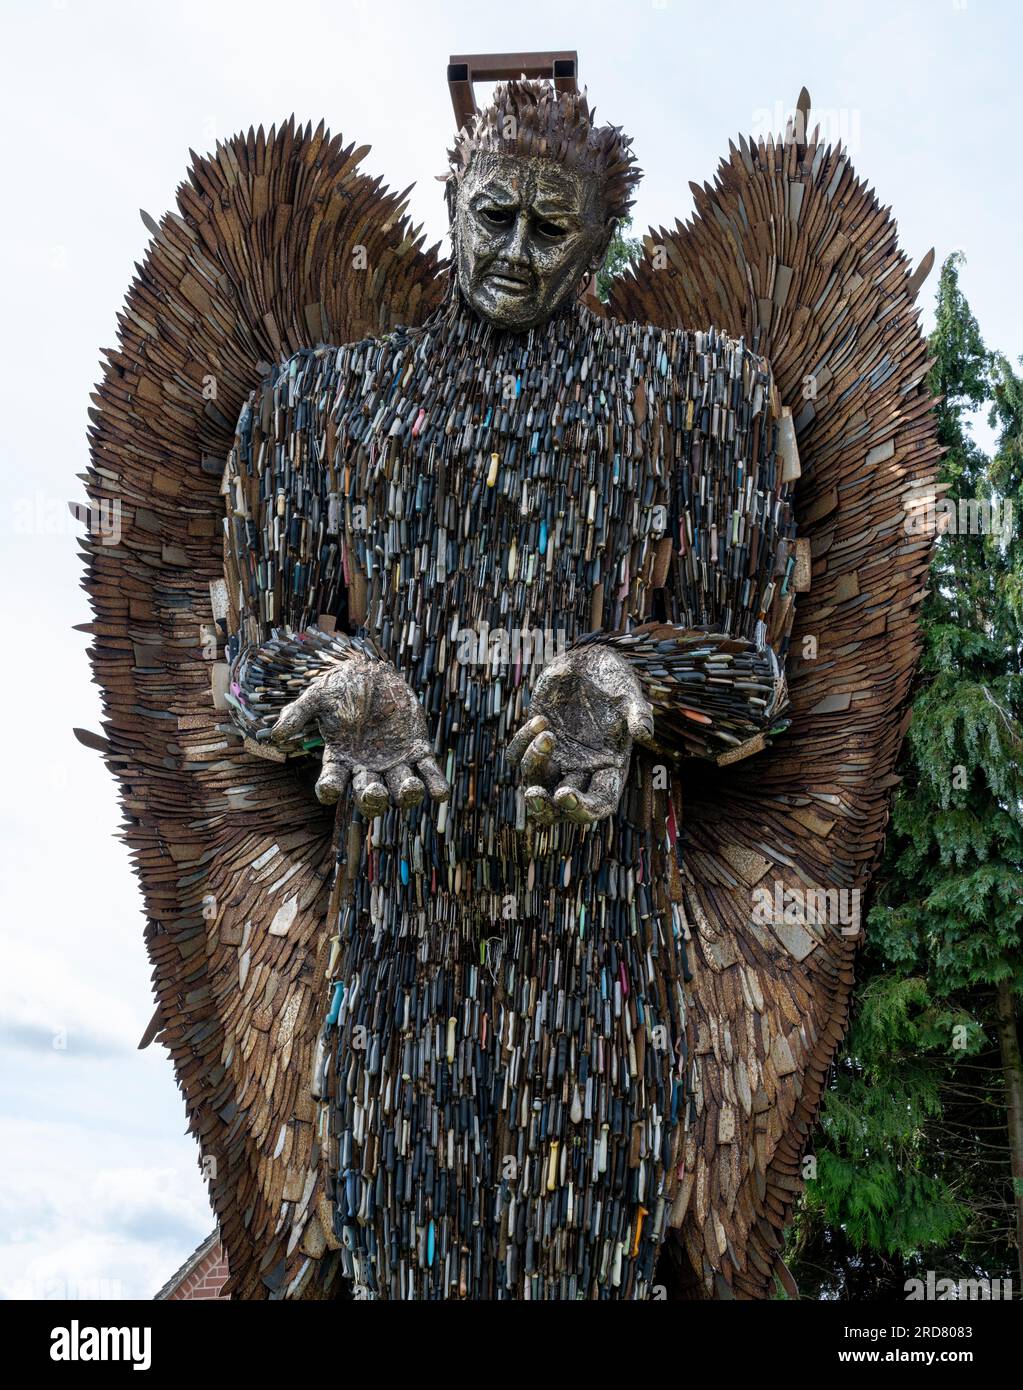 The Knife Angel - sculpteur par Alfie Bradley - exposé à Lichfield, Staffordshire, Angleterre, Royaume-Uni Banque D'Images